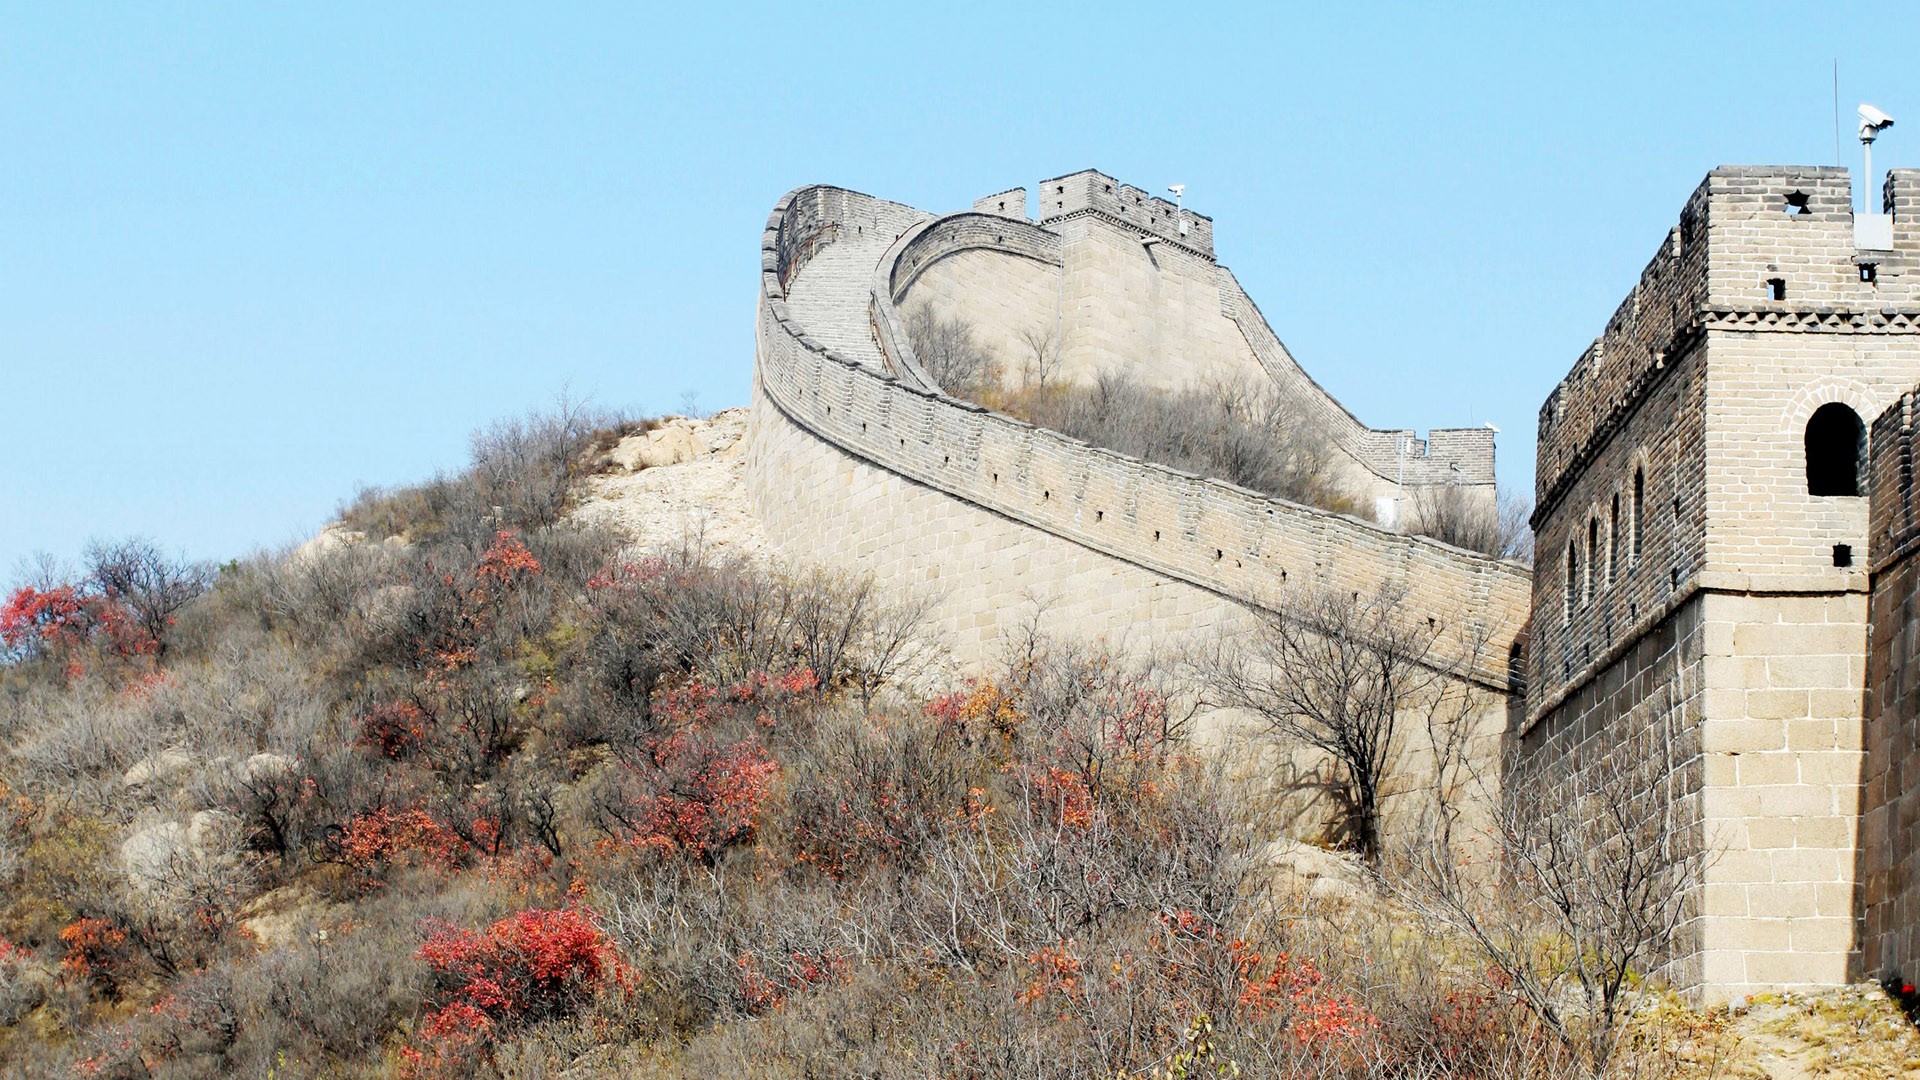 Beijing Tour - Badaling Great Wall (ggc works) #1 - 1920x1080